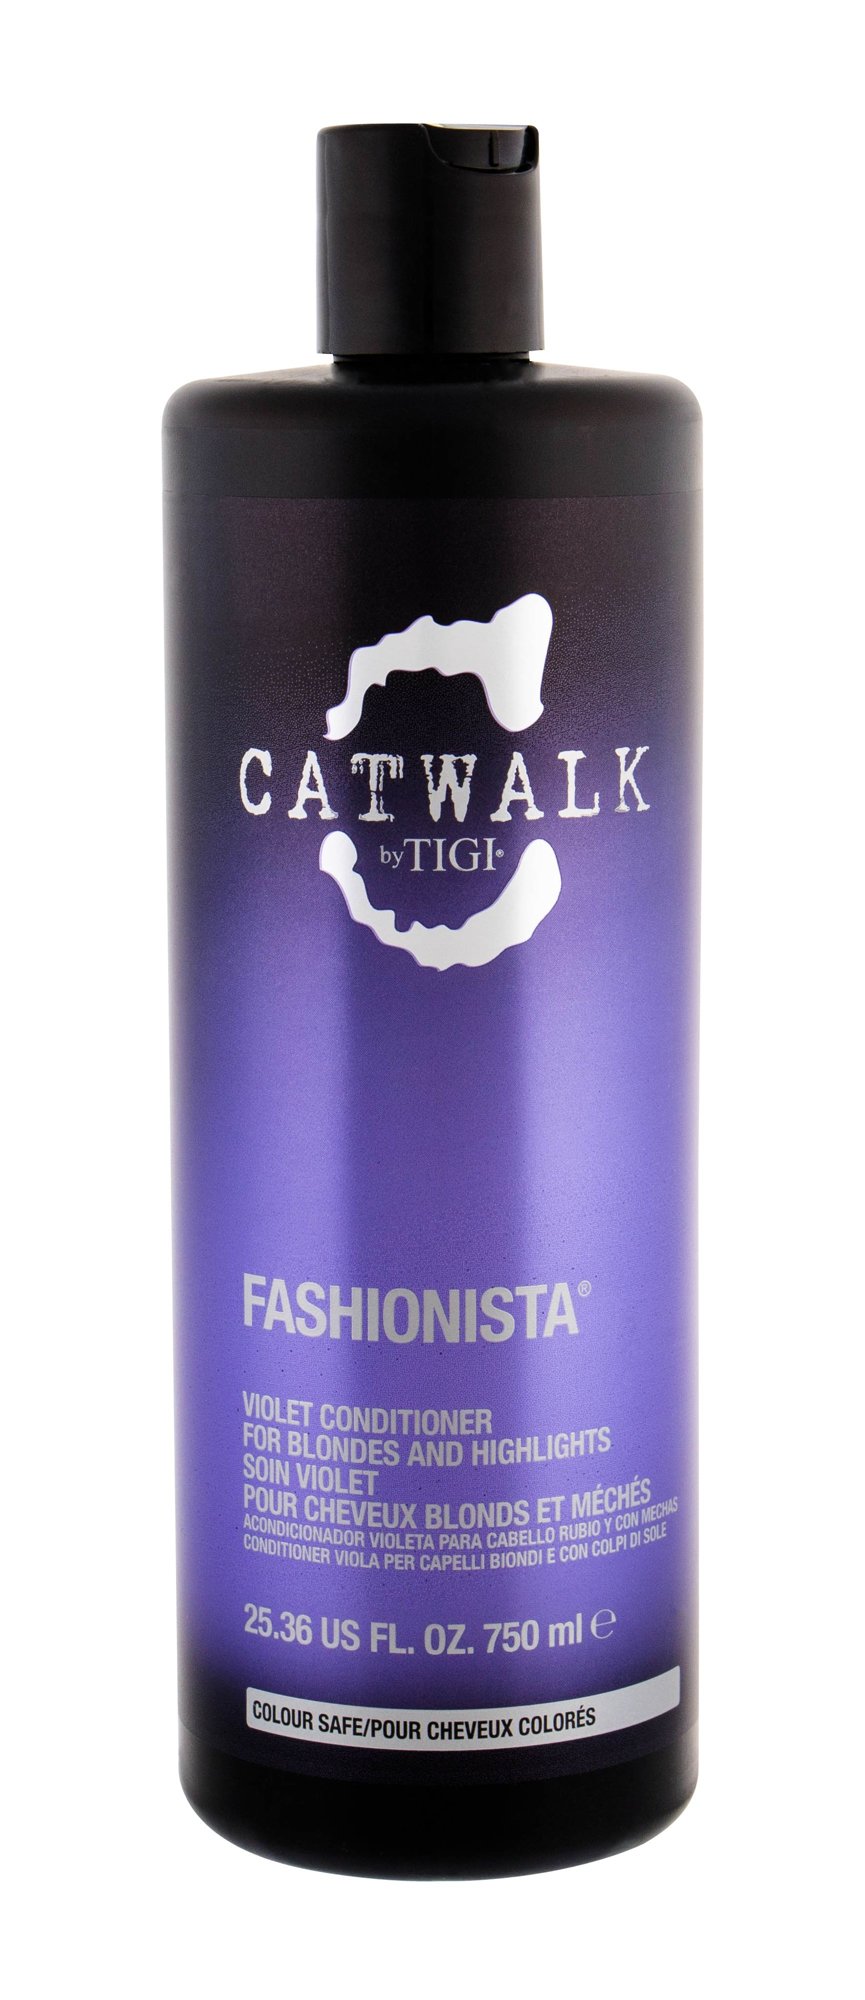 Tigi Catwalk Fashionista Violet kondicionierius